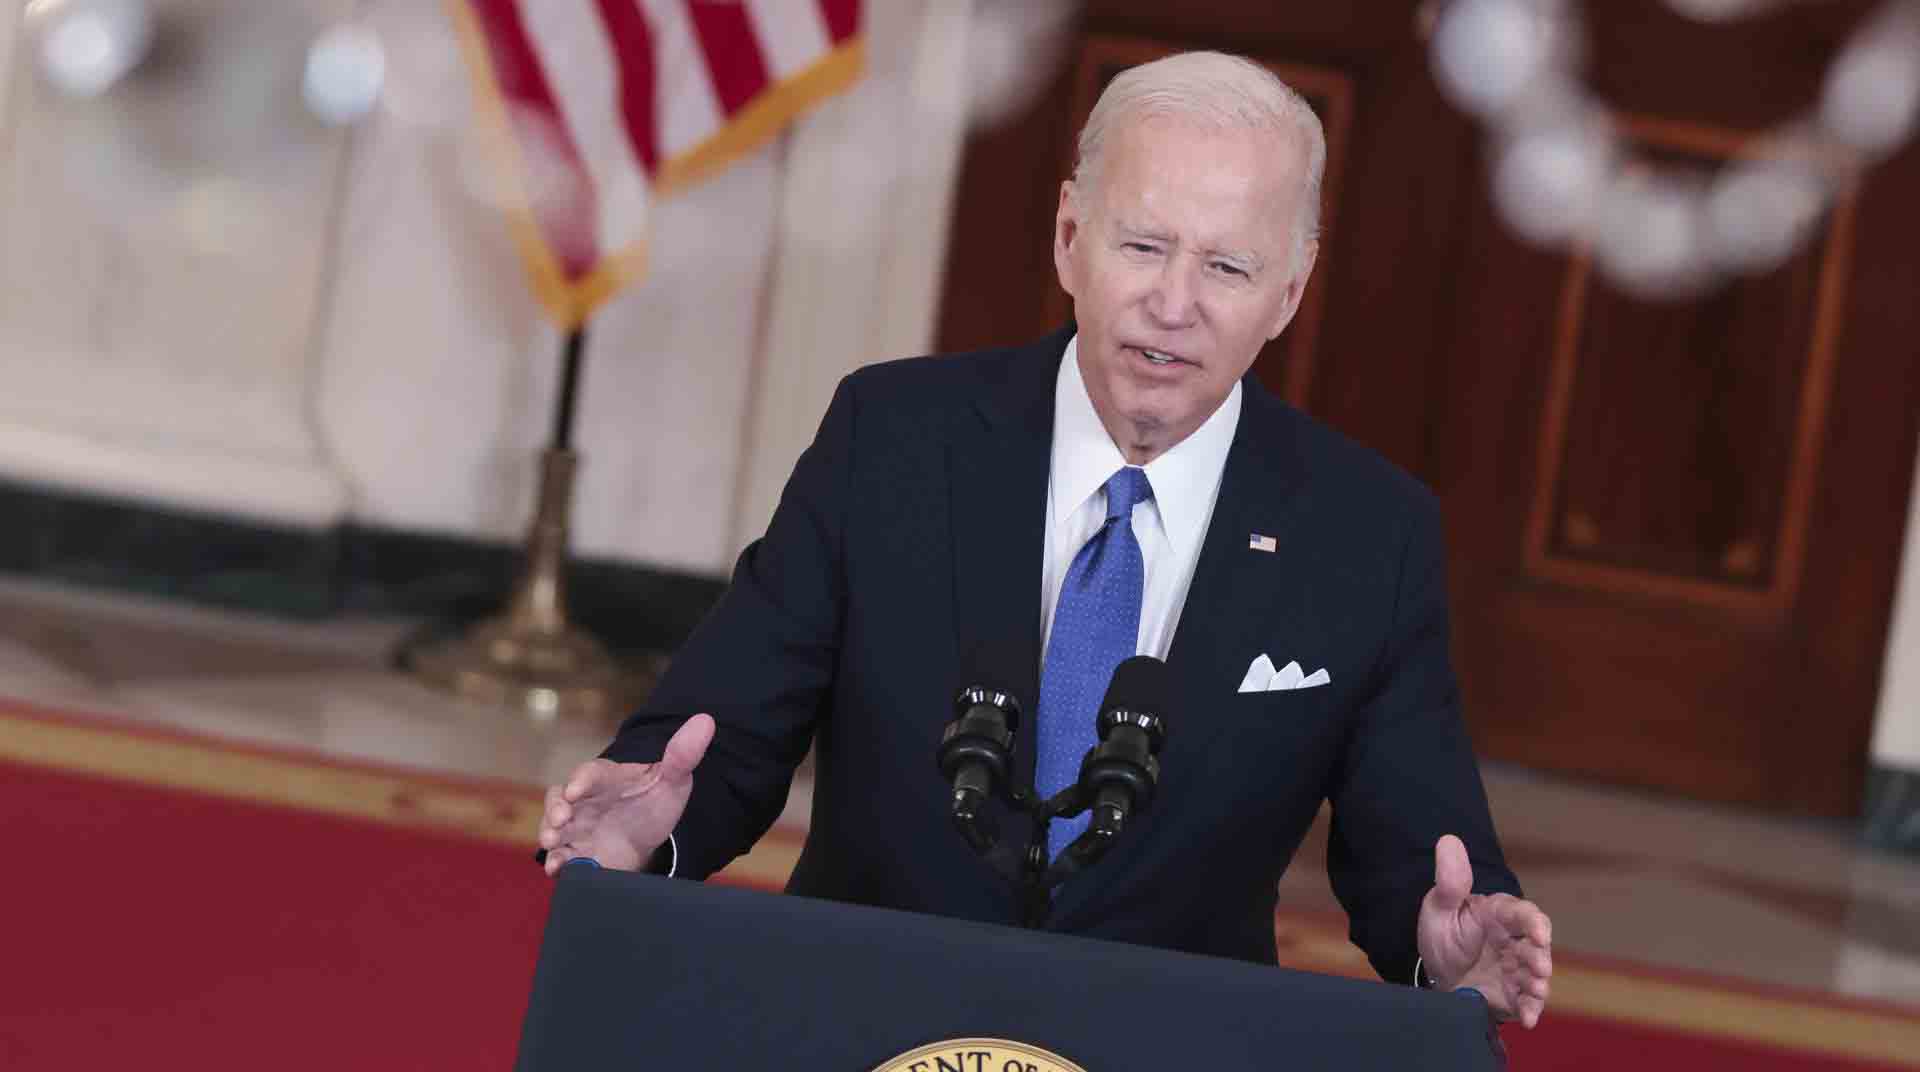 El presidente de EE.UU., Joe Biden, contempla nuevas acciones para proteger el acceso legal a la medicación abortiva. Foto: EFE